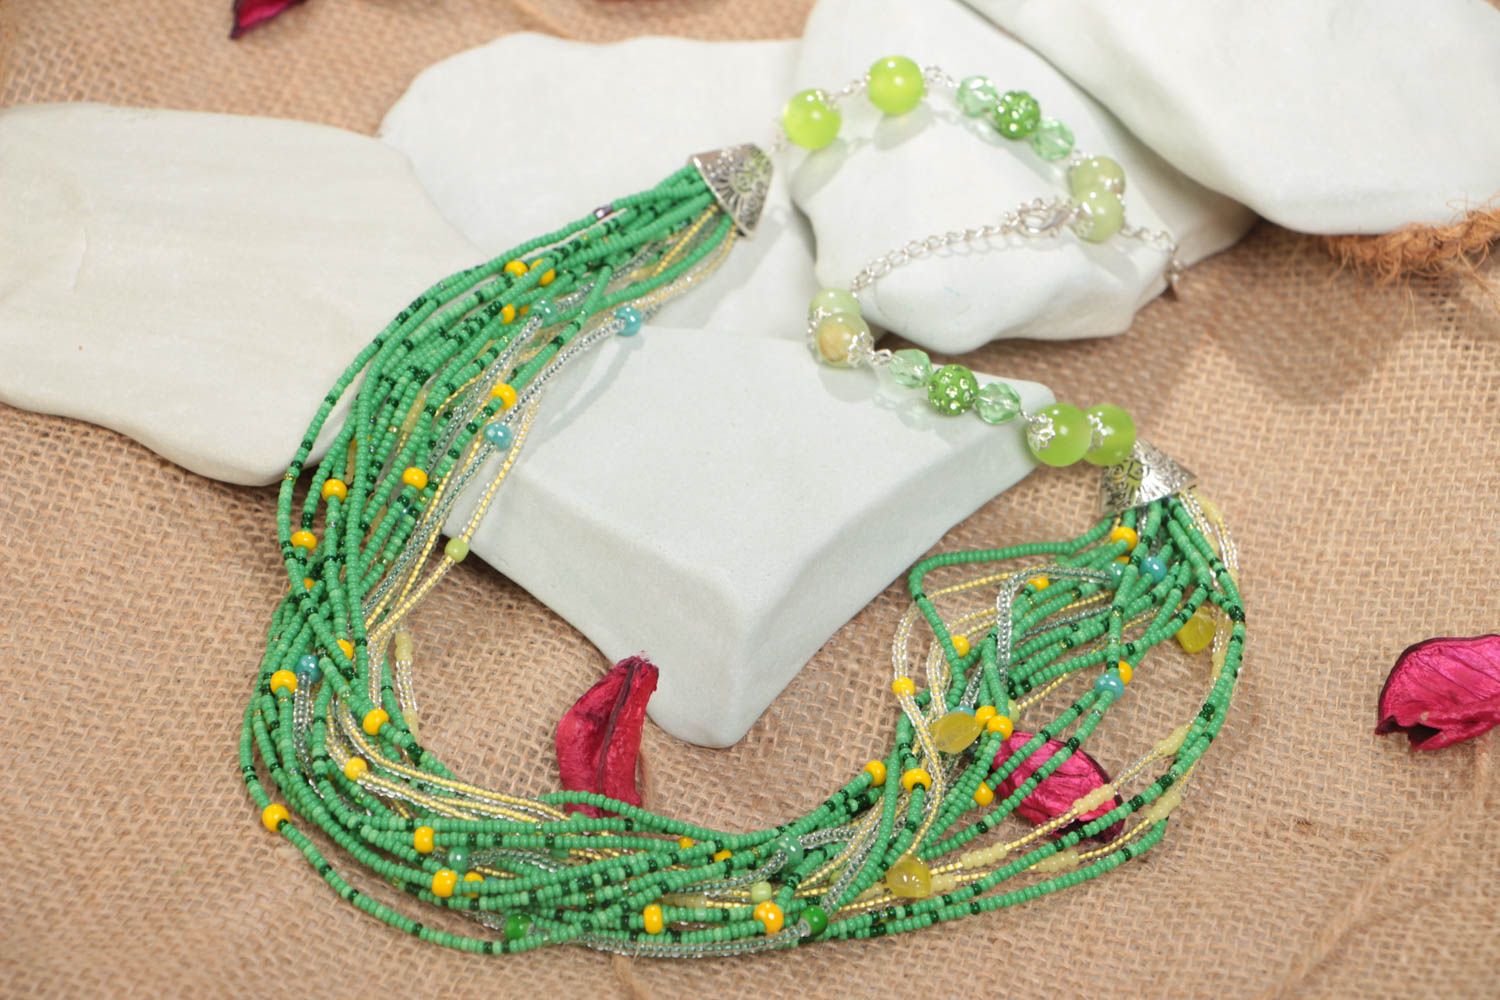 Ожерелье из бисера и бусин зеленое с желтым красивое яркое ручной работы фото 1